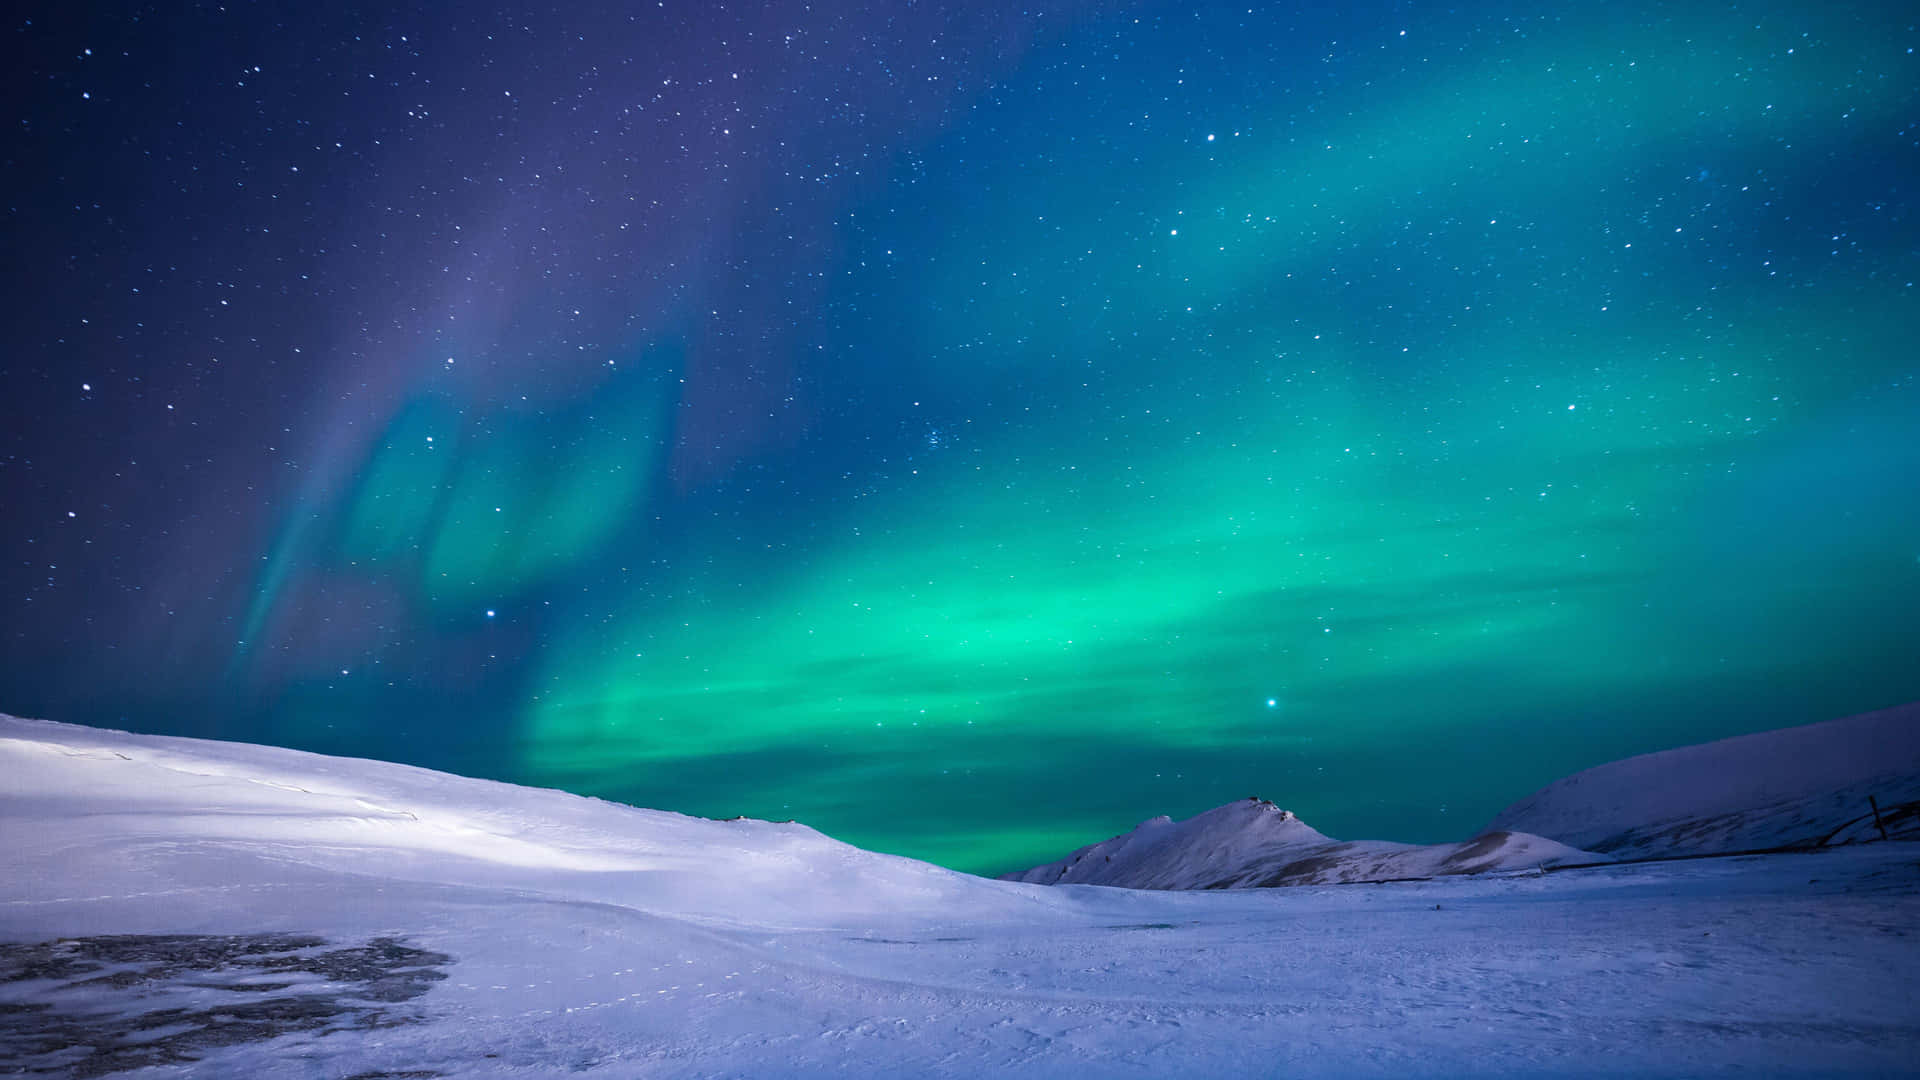 Lasluces De La Aurora Boreal Iluminan El Cielo Nocturno En El Norte De Laponia.